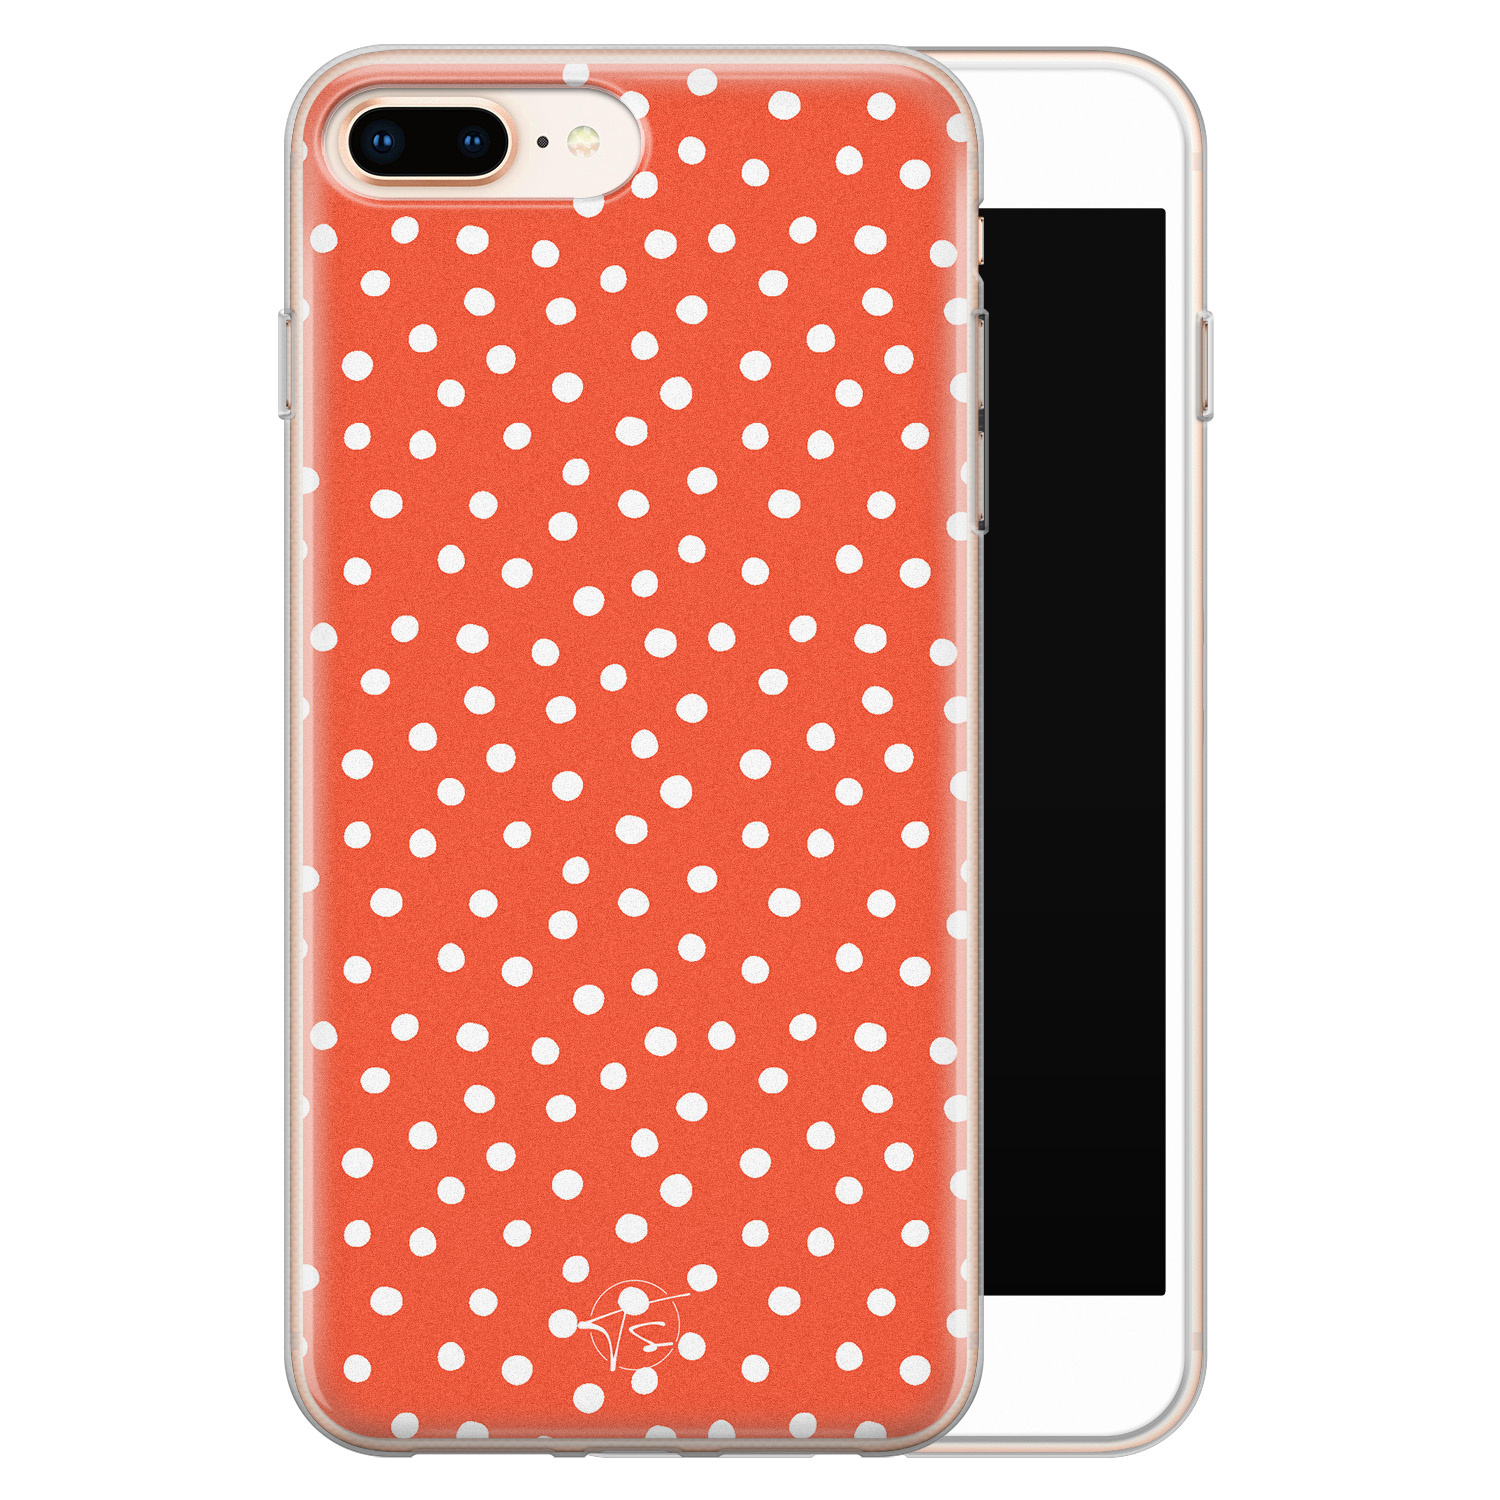 Telefoonhoesje Store iPhone 8 Plus/7 Plus siliconen hoesje - Oranje stippen